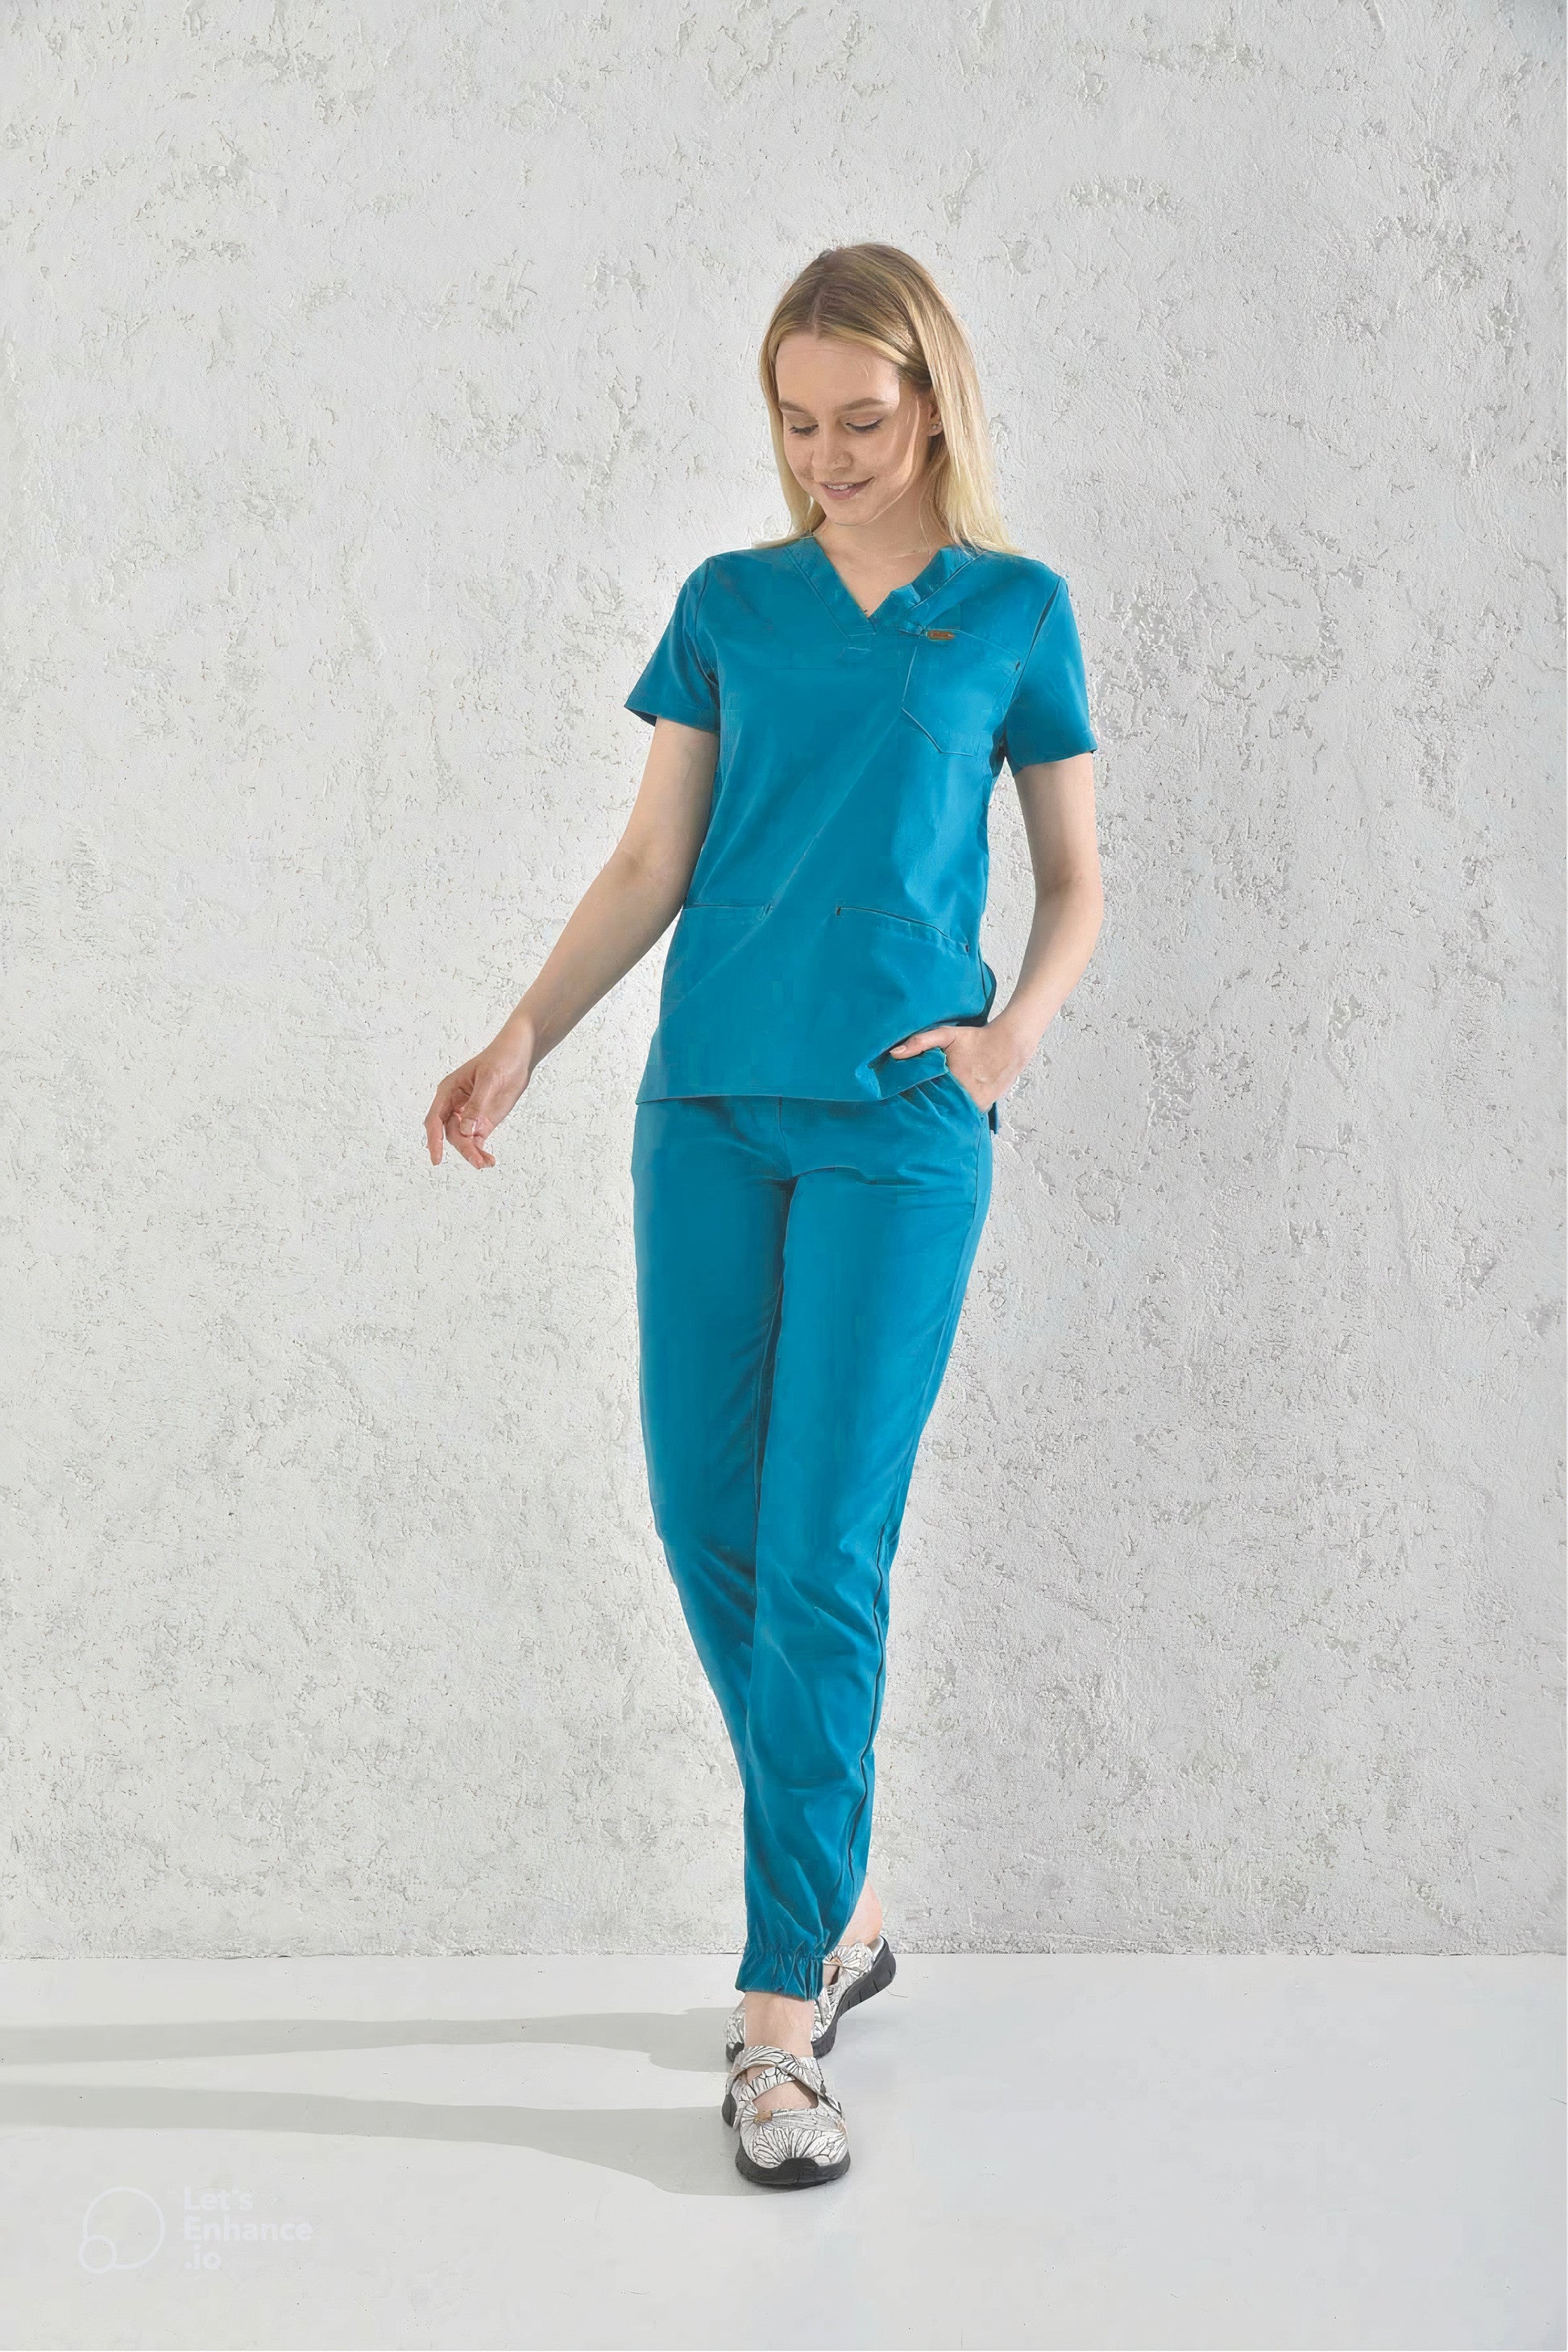 Une femme en uniforme médical Slimfit - Tenue médicale - Bleu Cyan dune blouse et dun pantalon